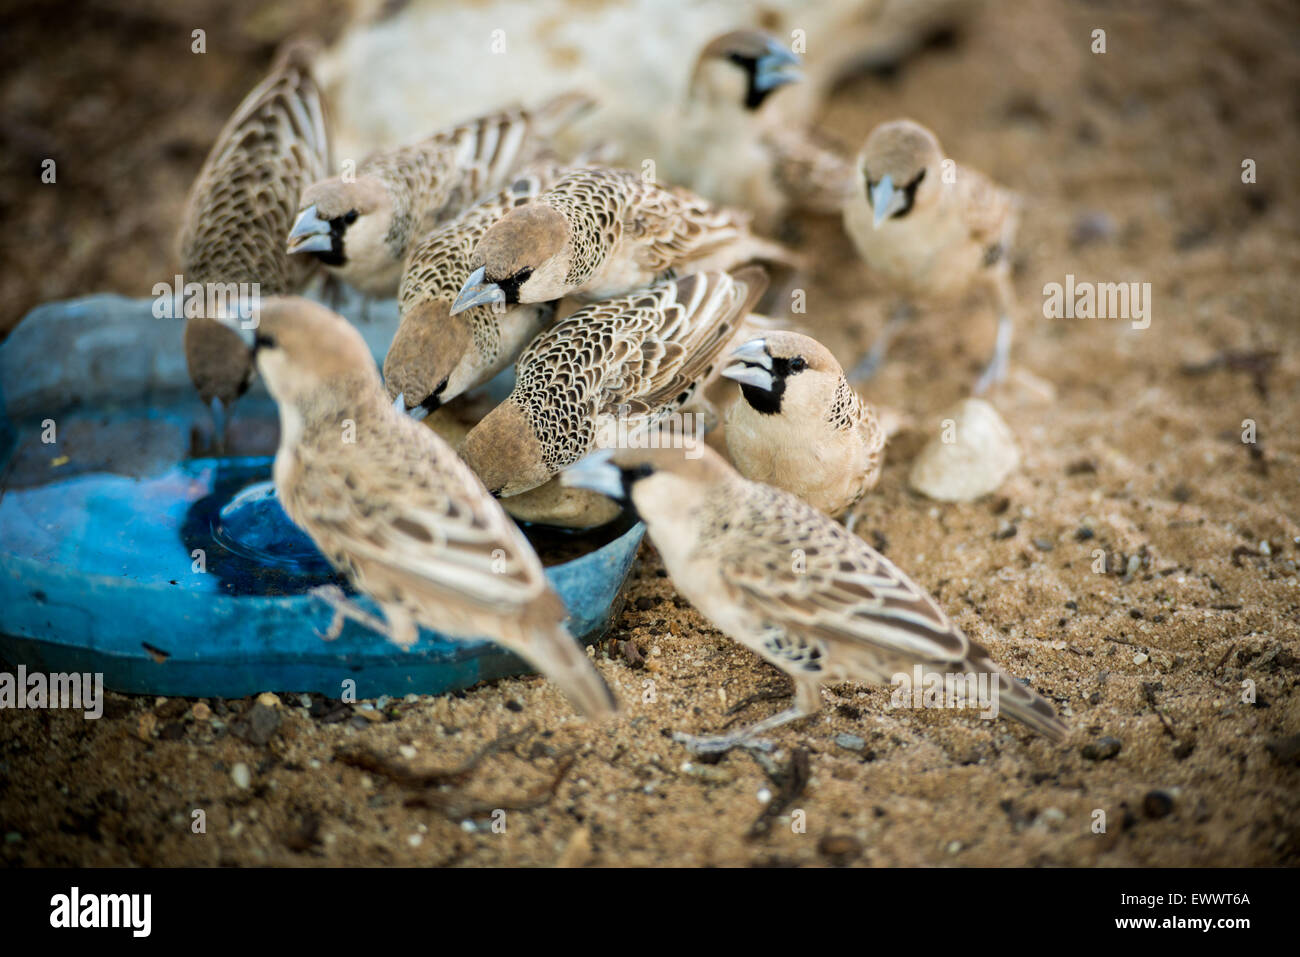 Khalagadi Transfrontier Park, Afrika - Vögel in freier Wildbahn Stockfoto